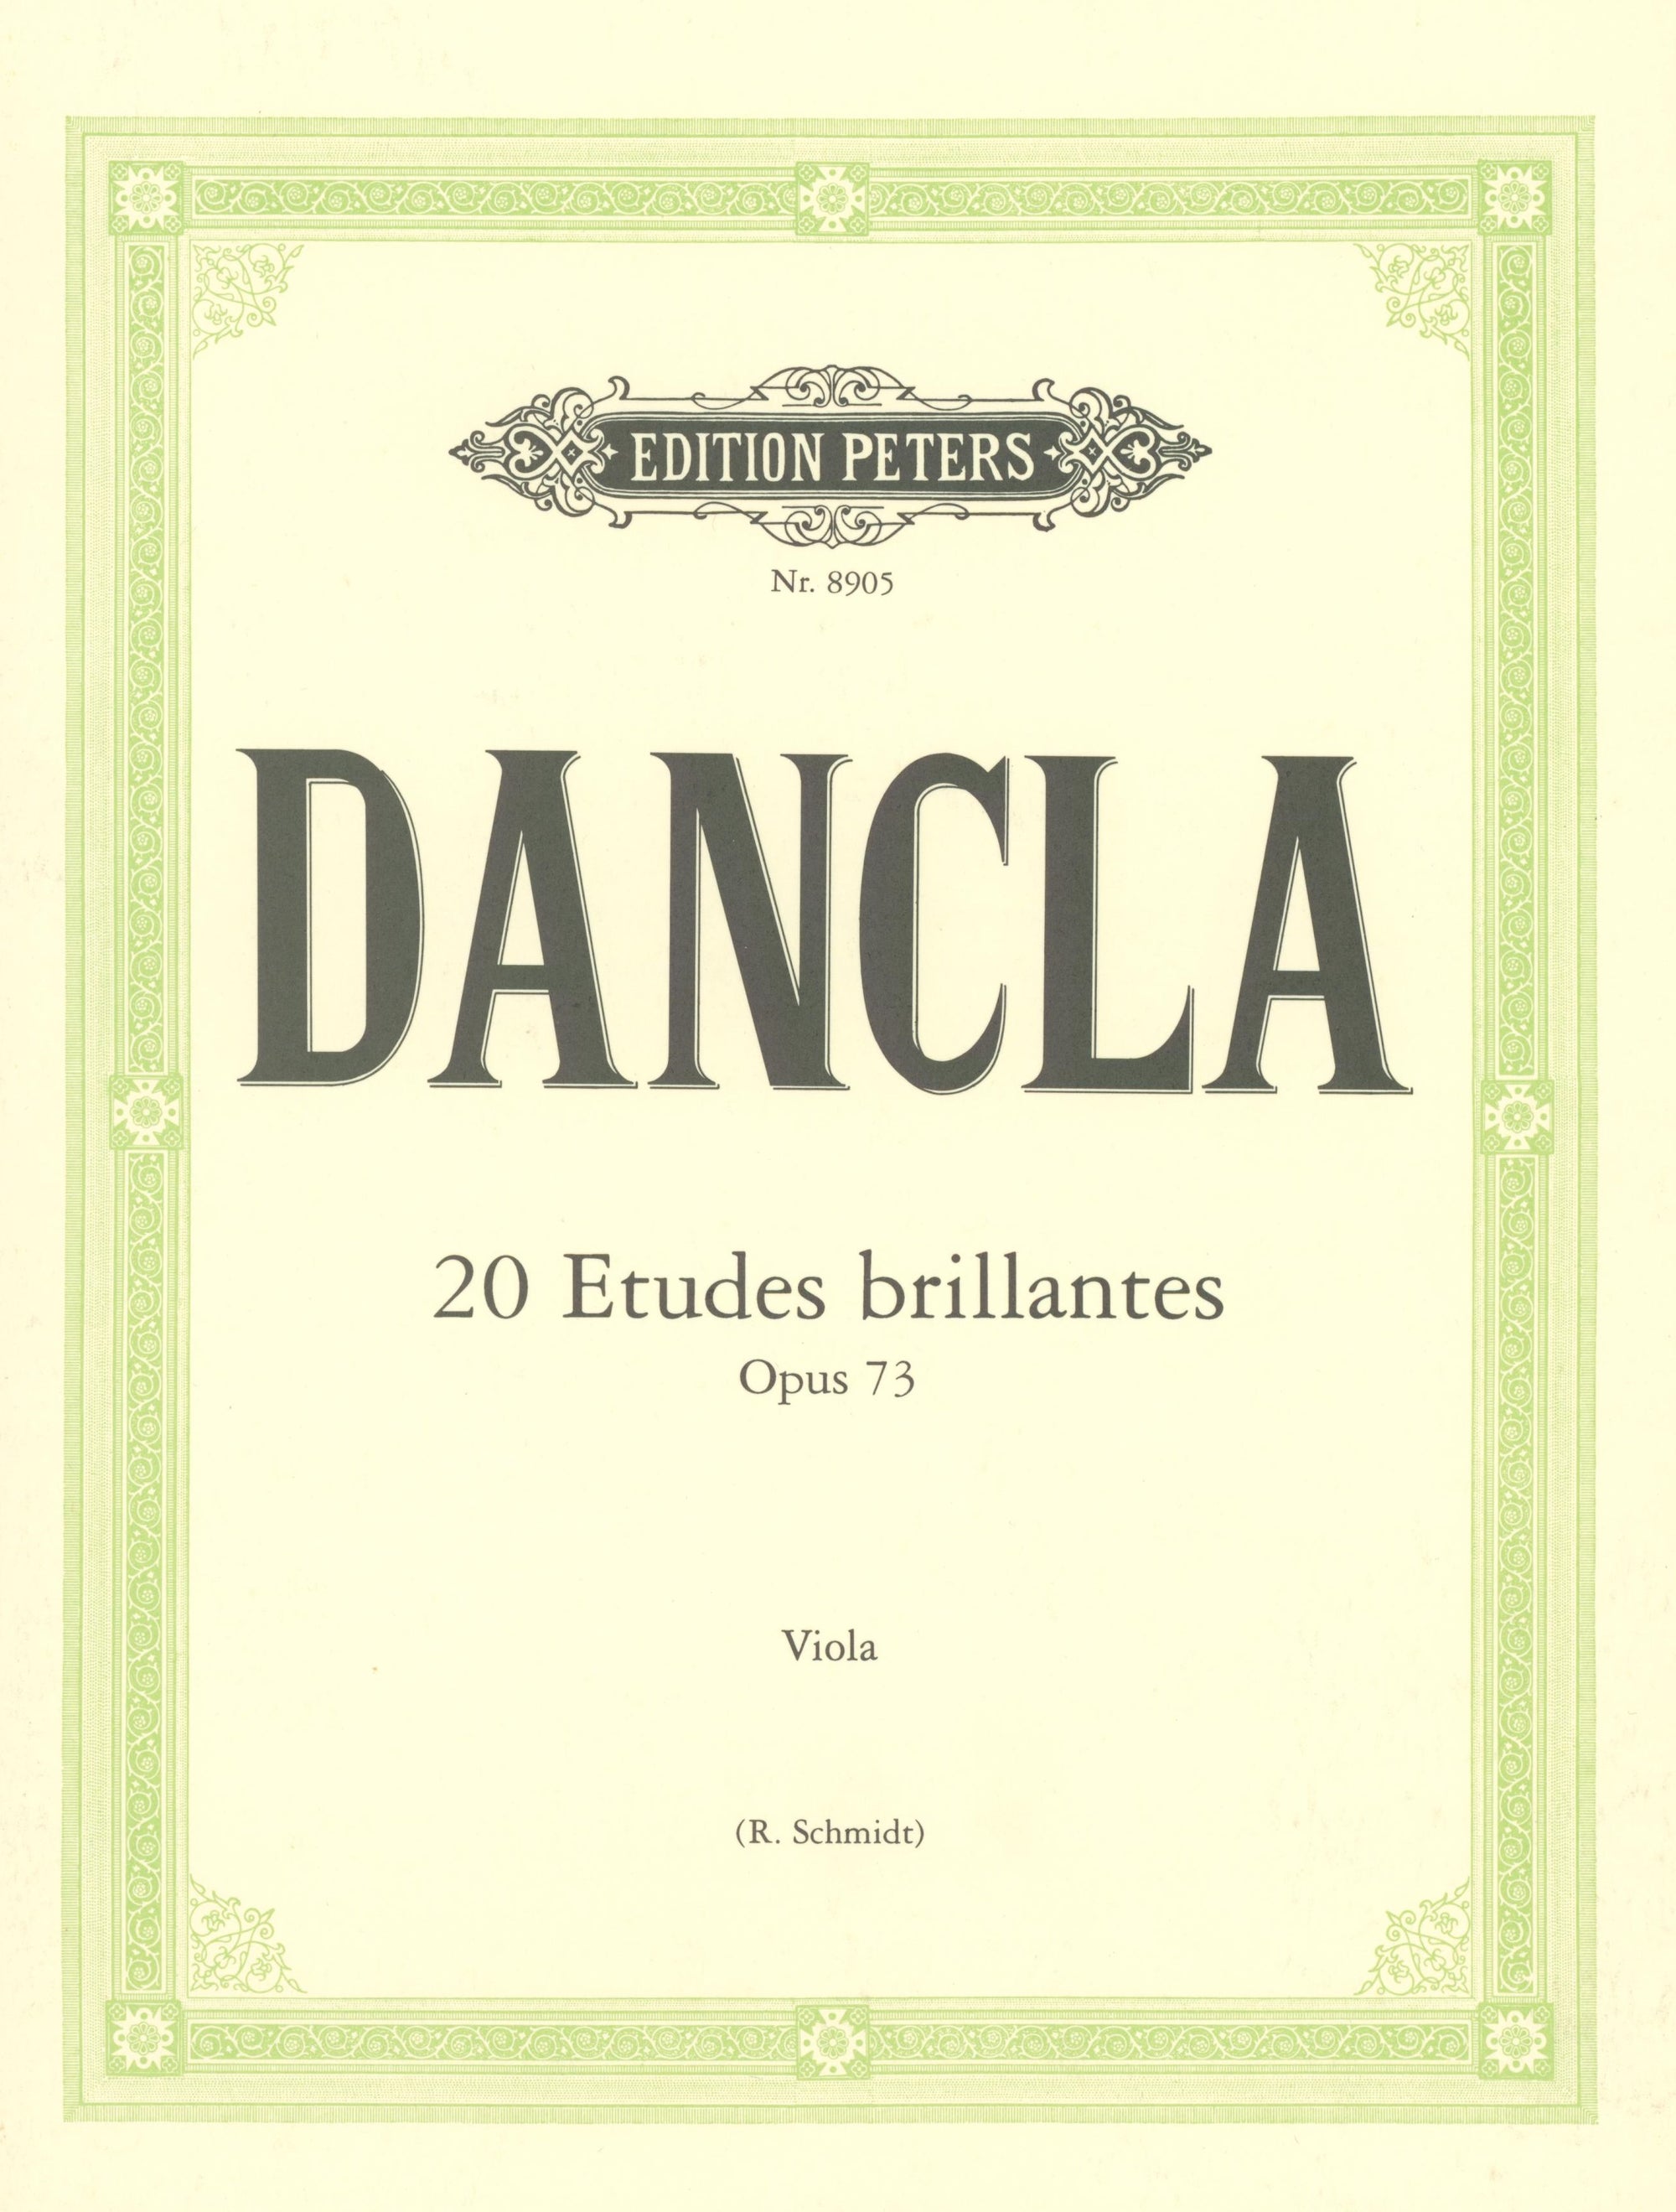 Dancla: 20 Études brillantes, Op. 73 (arr. for viola)